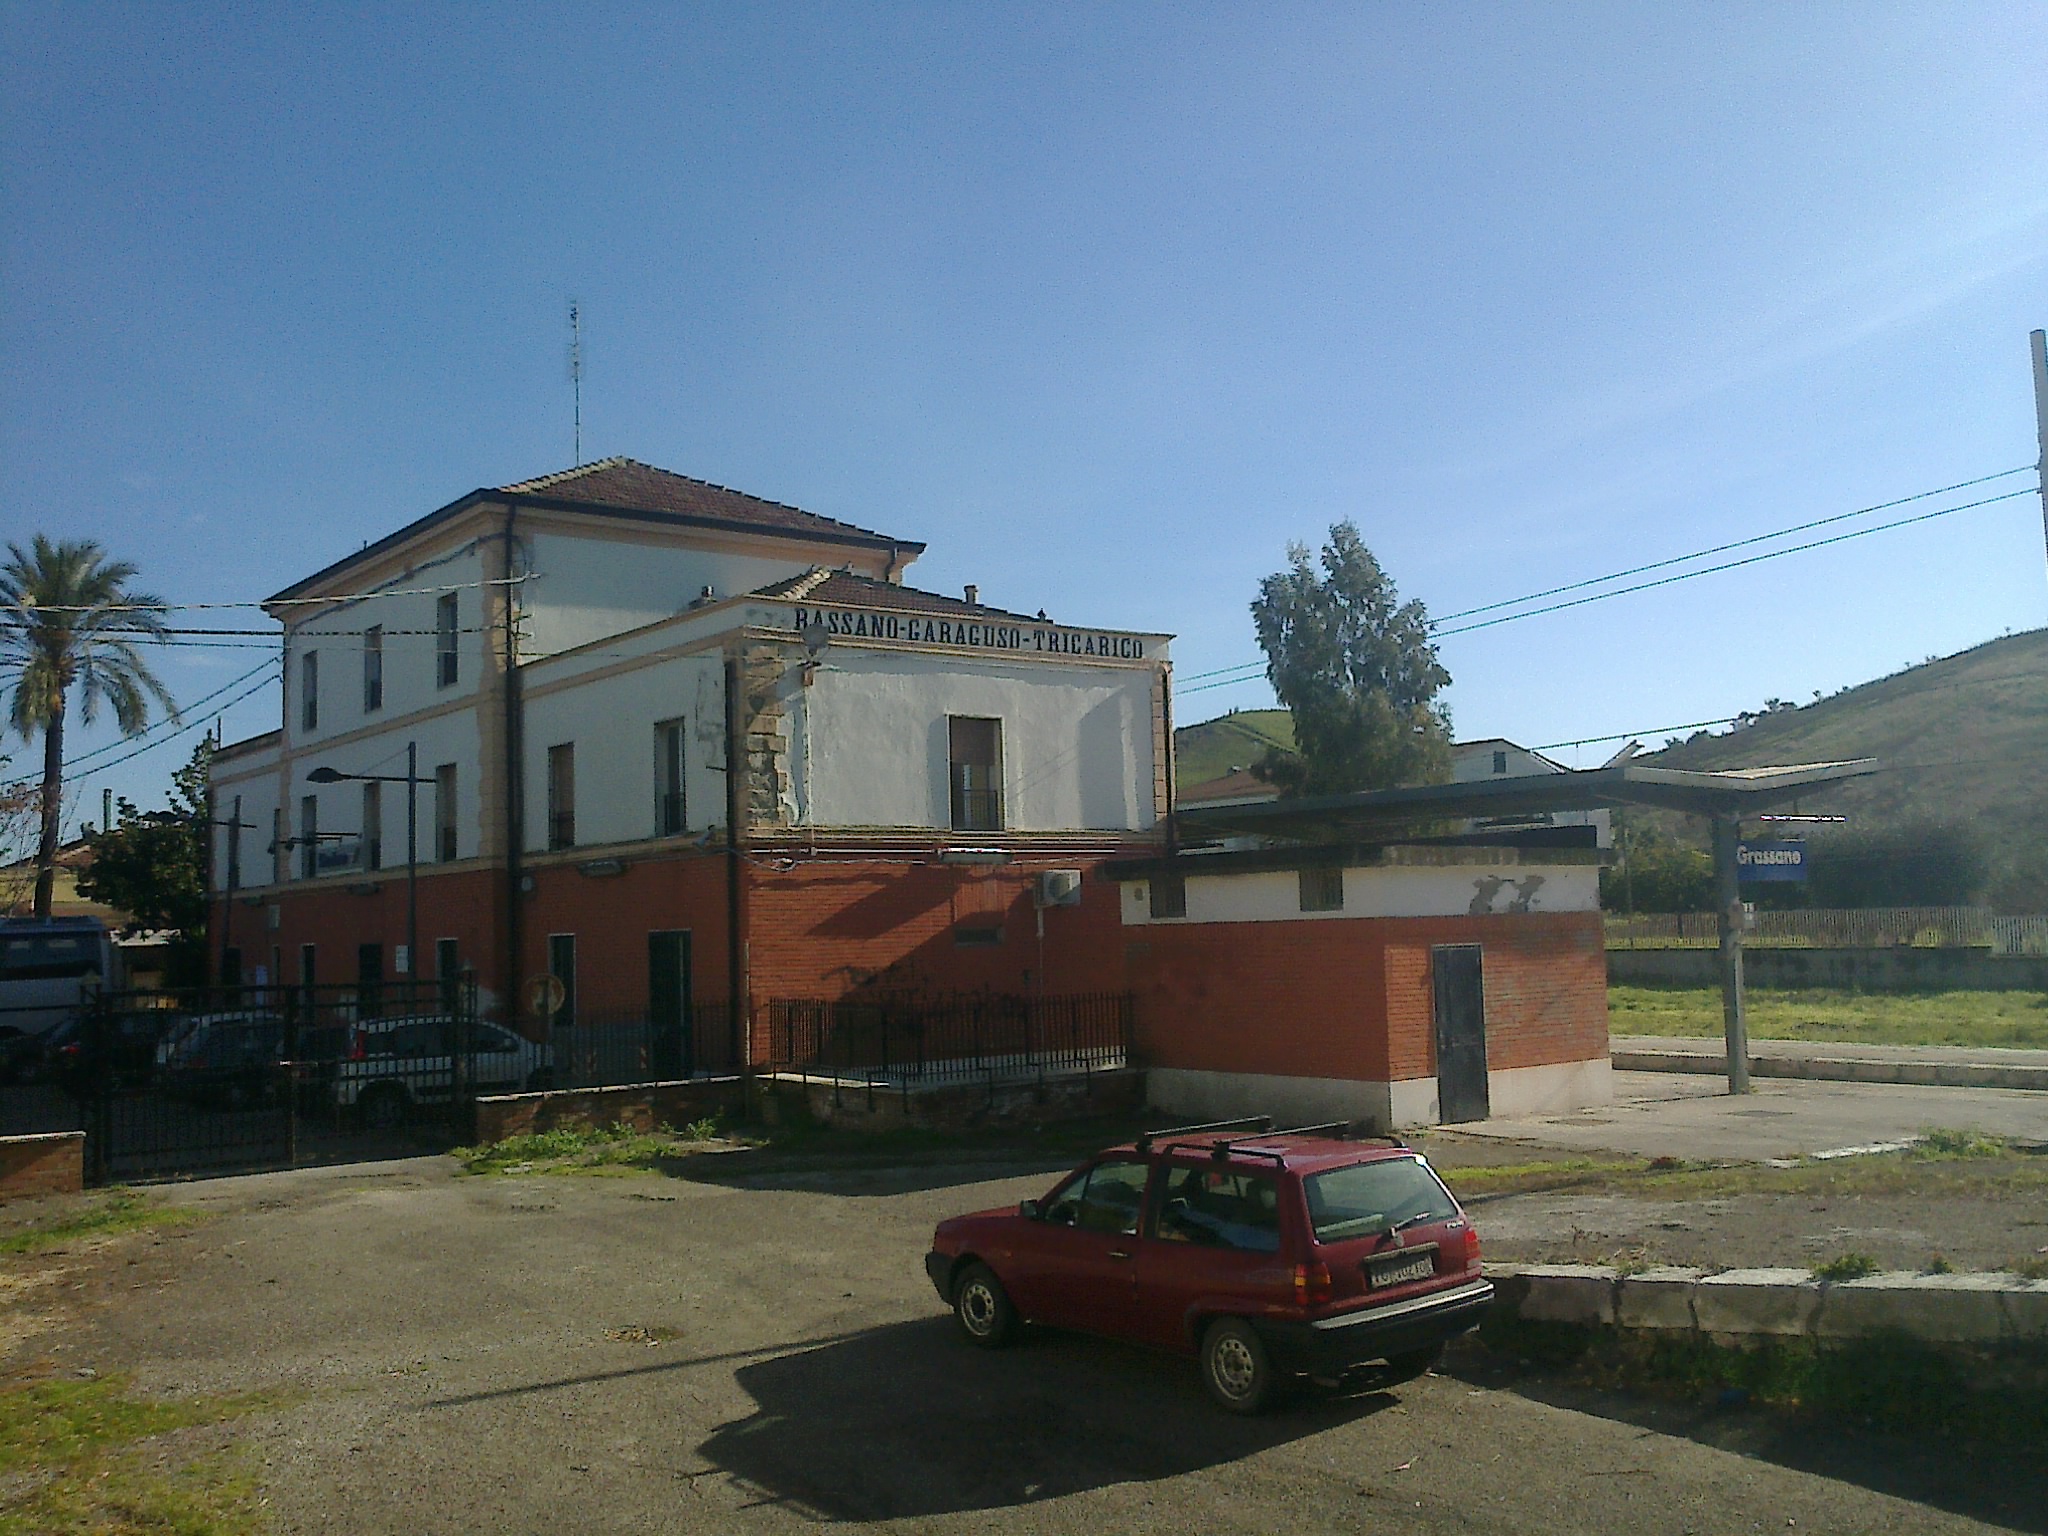 stazione, Stazione ferroviaria di Grassano-Garaguso-Tricarico (XIX sec. d.C)